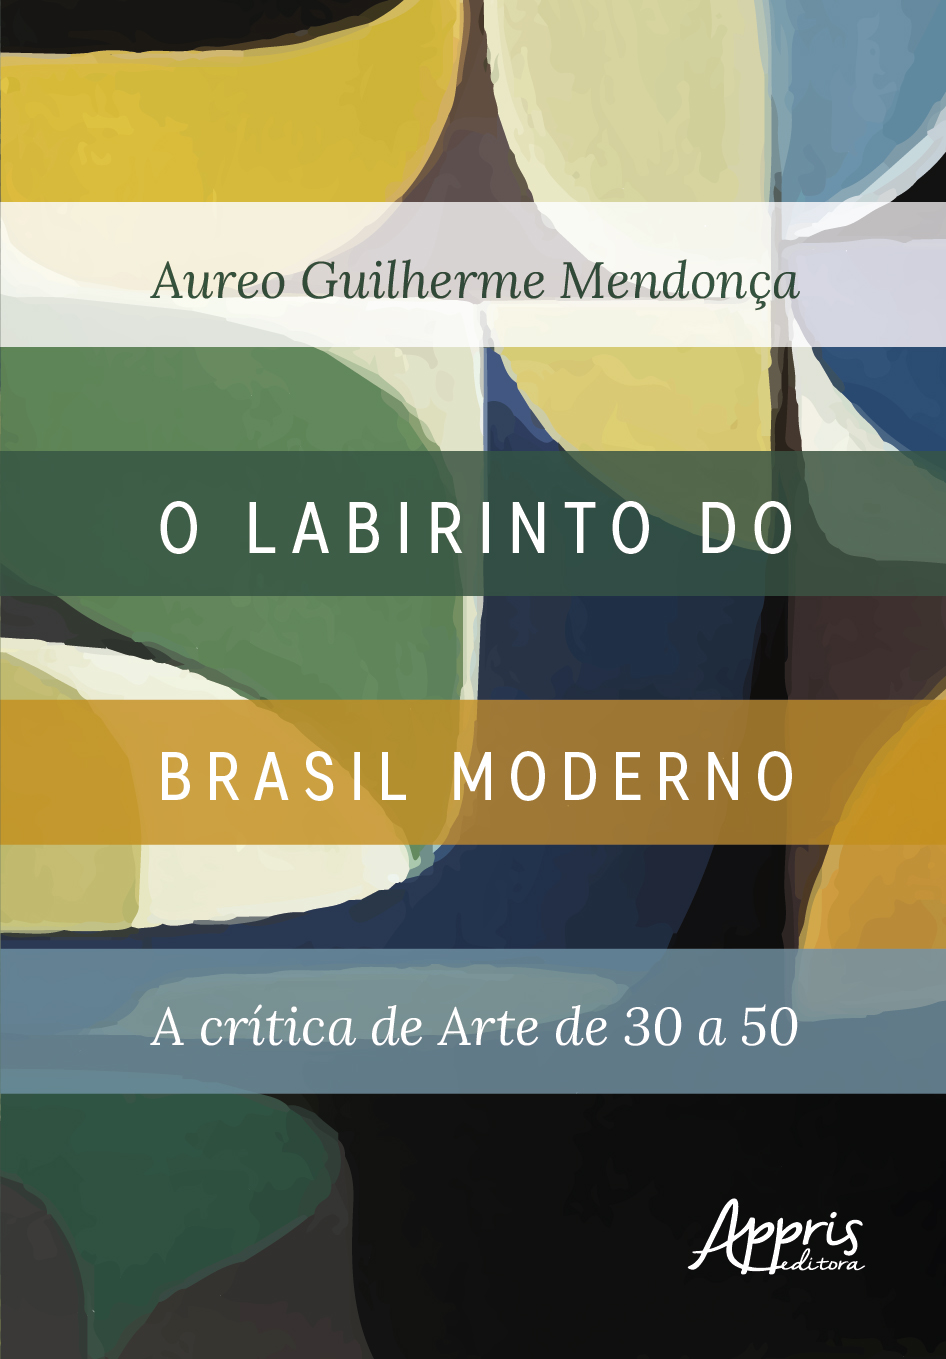 Aureo Guilherme Mendonca